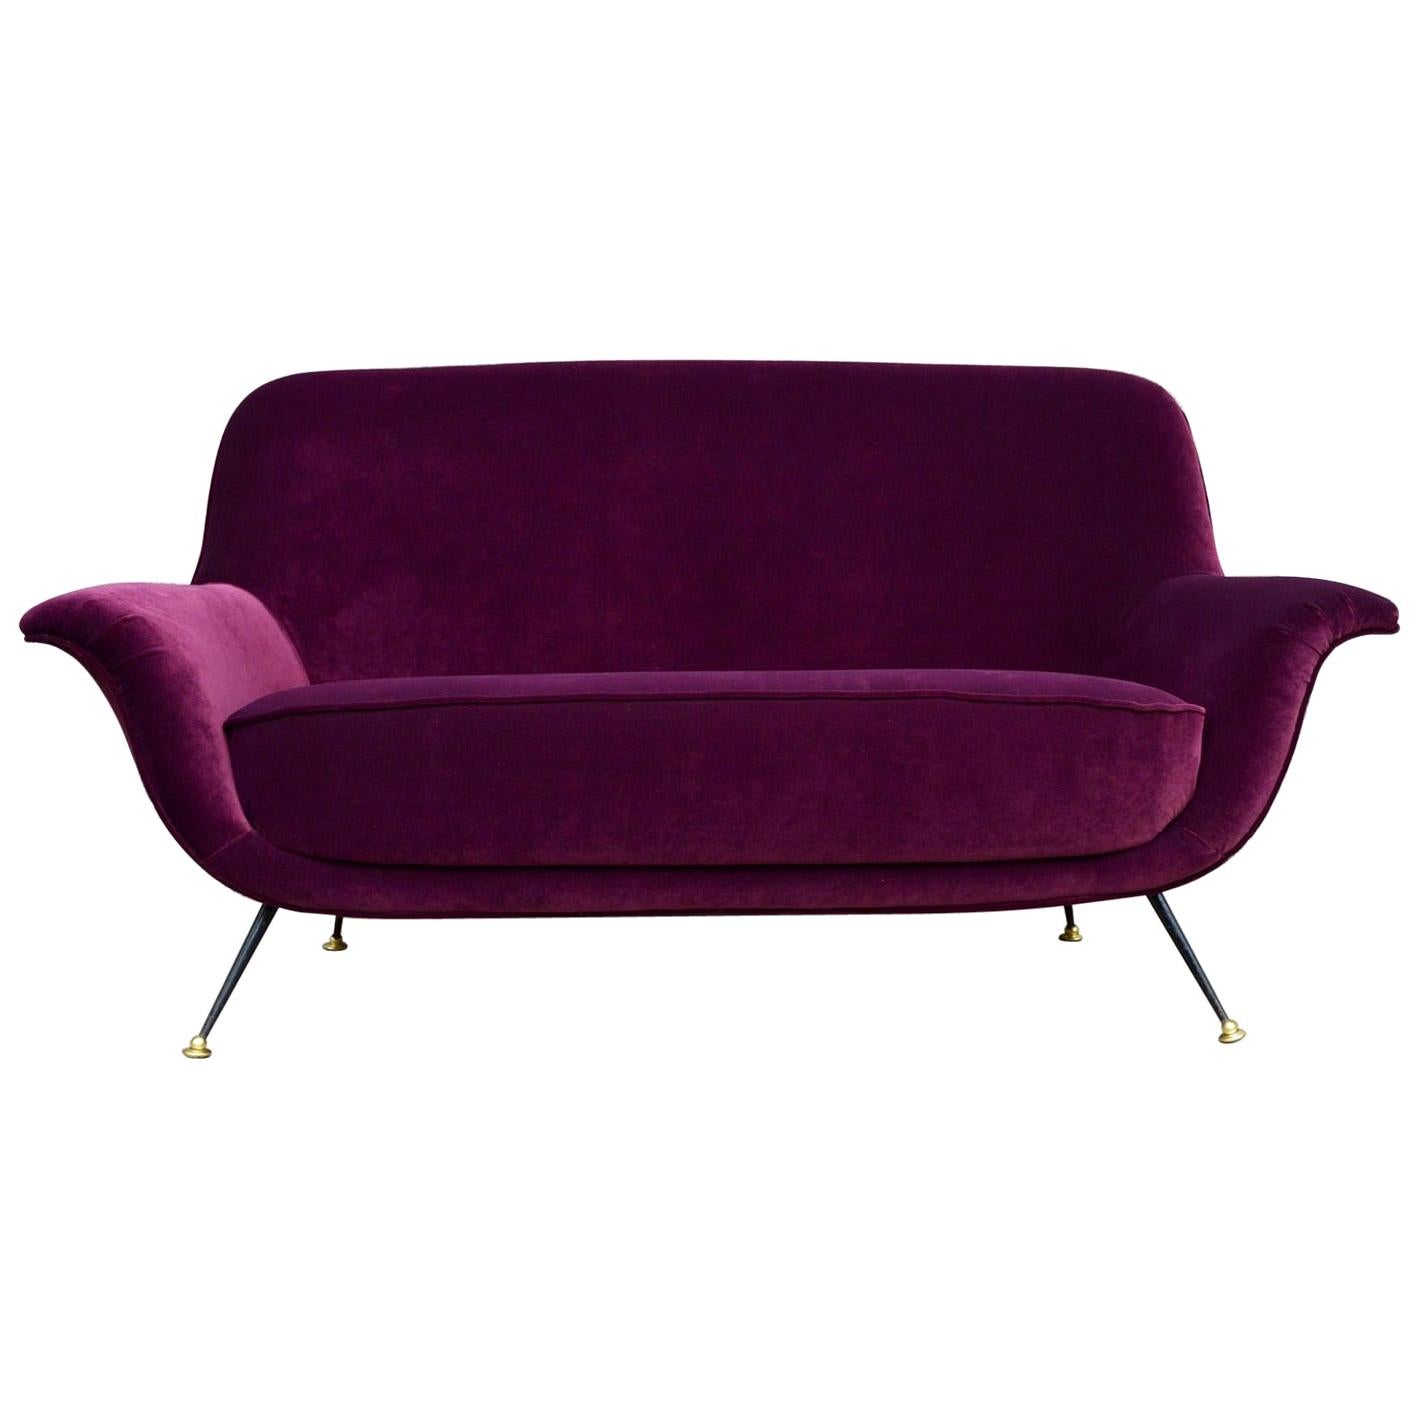 Italian Midcentury Sofa or Loveseat in New Purple Velvet, 1950s